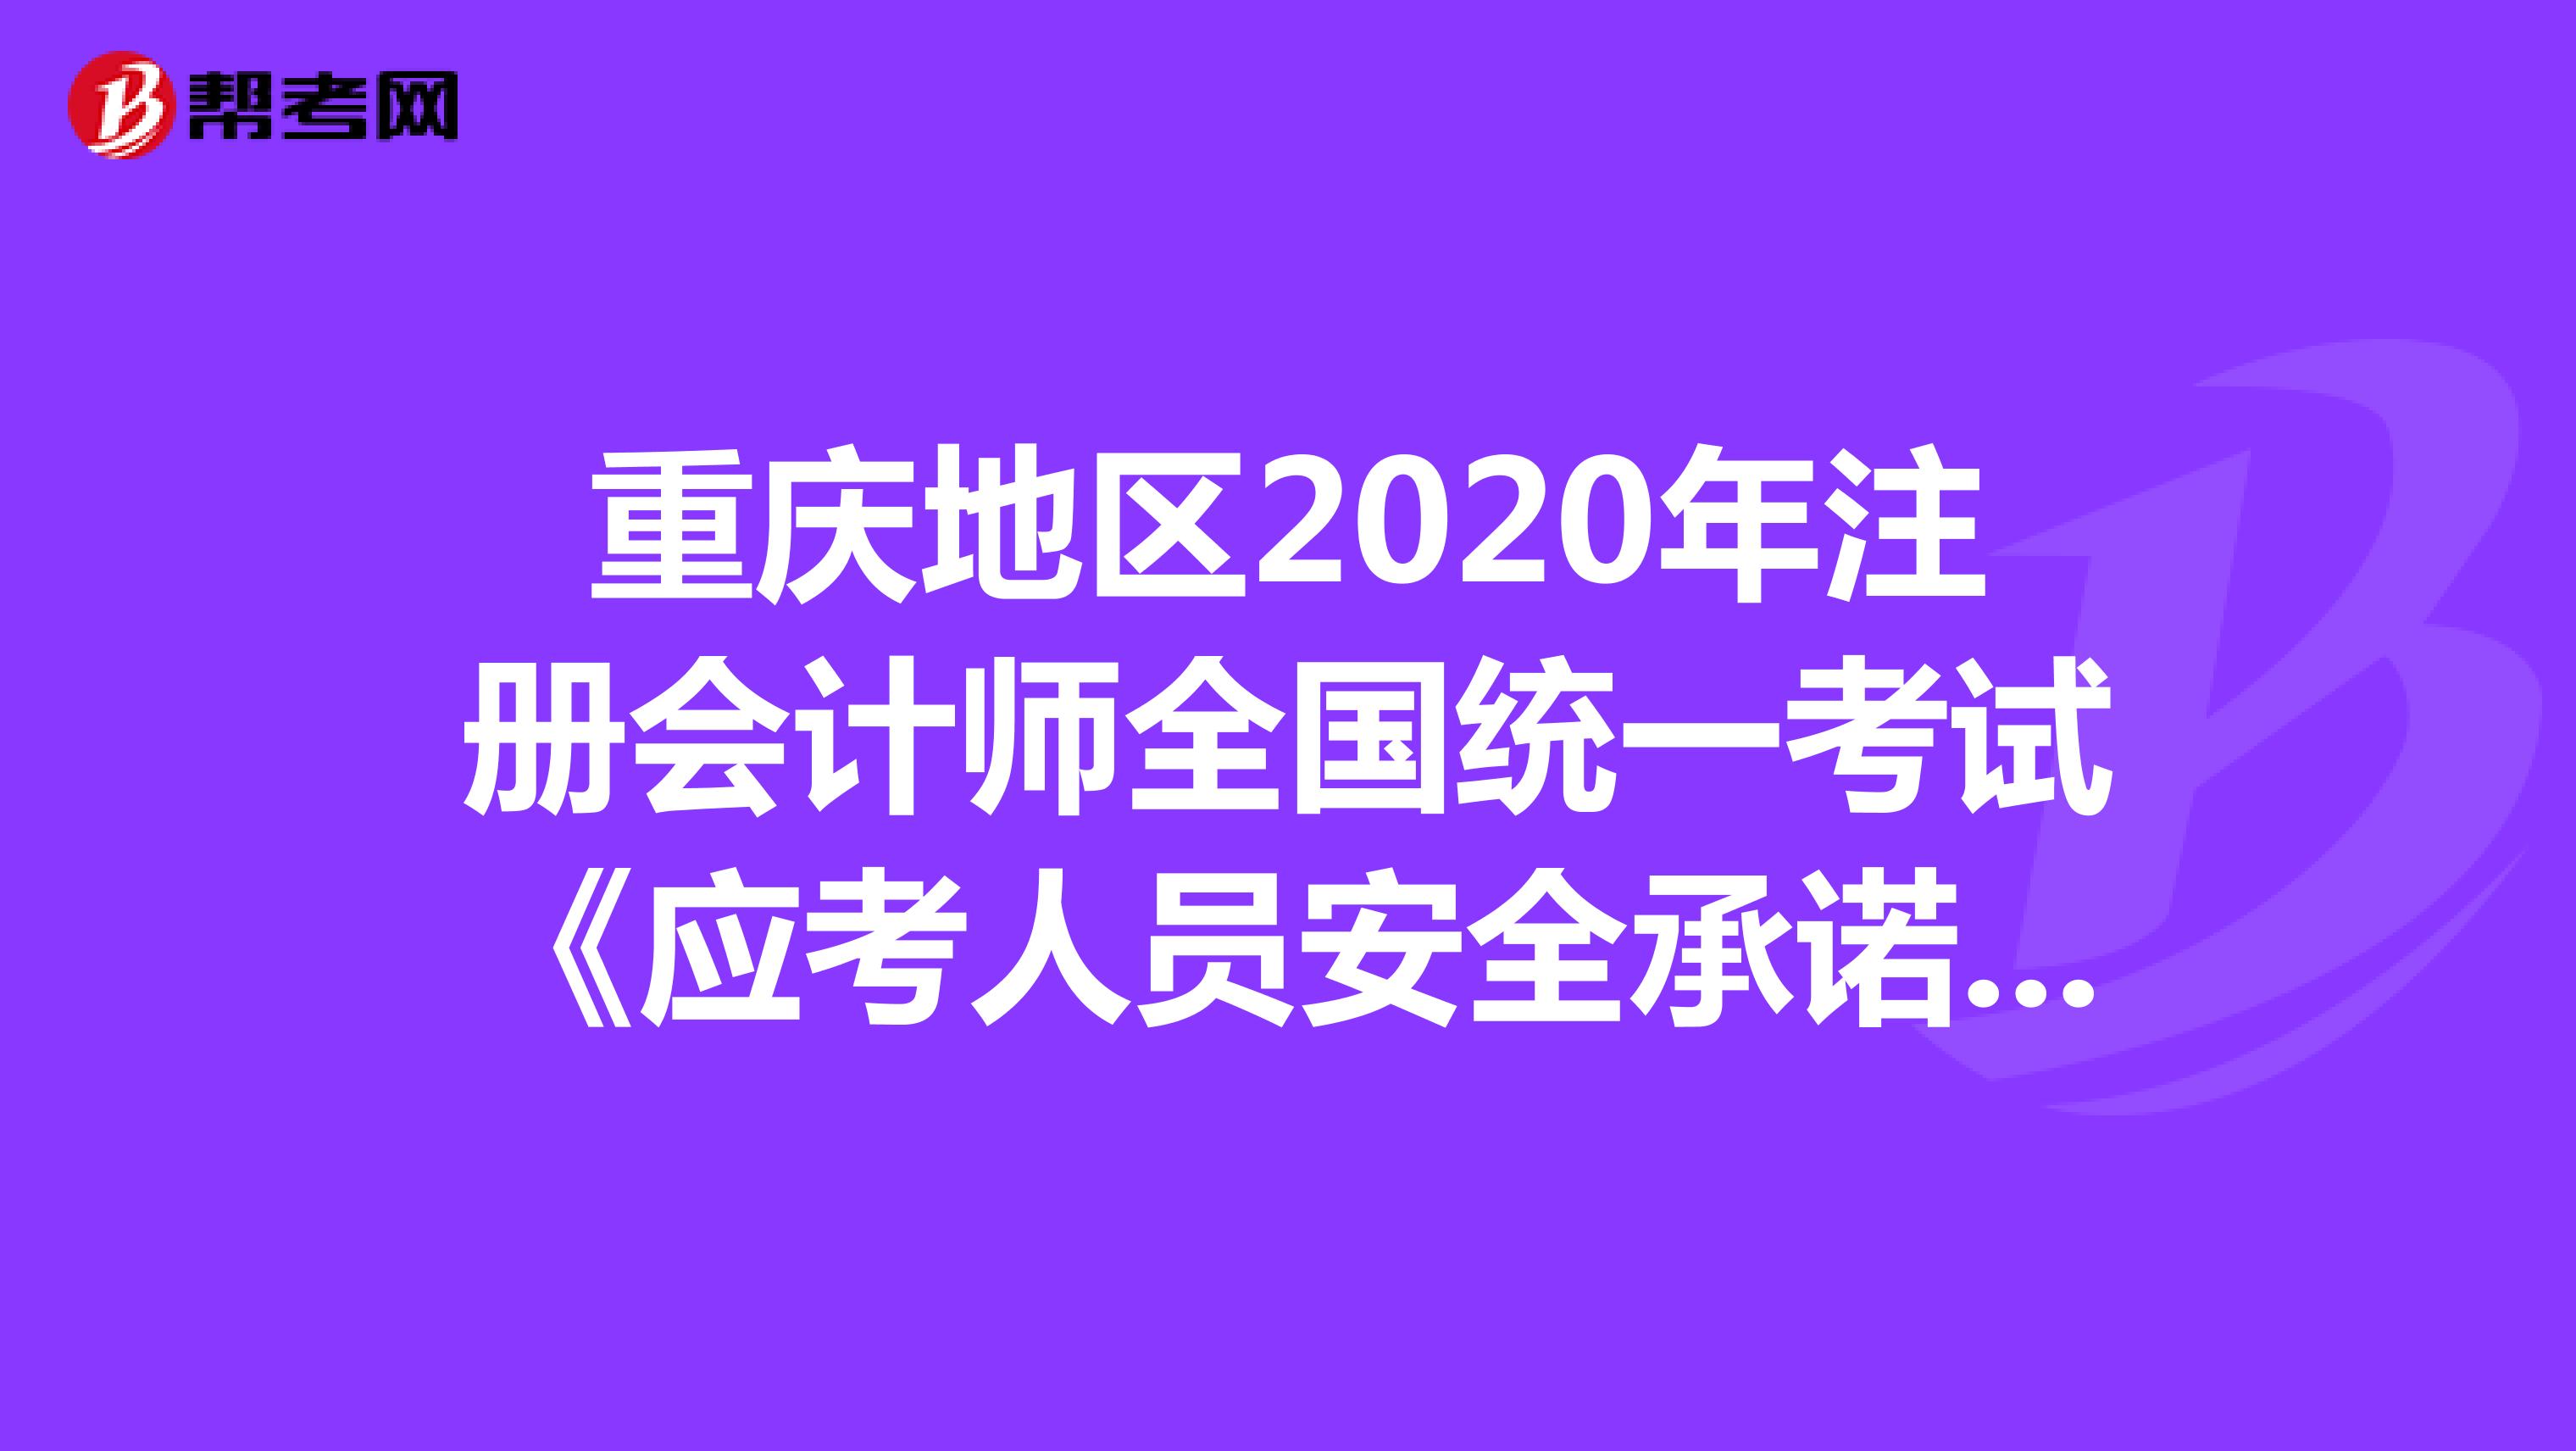 重庆地区2021年注册会计师全国统一考试《应考人员安全承诺书》的相关公告